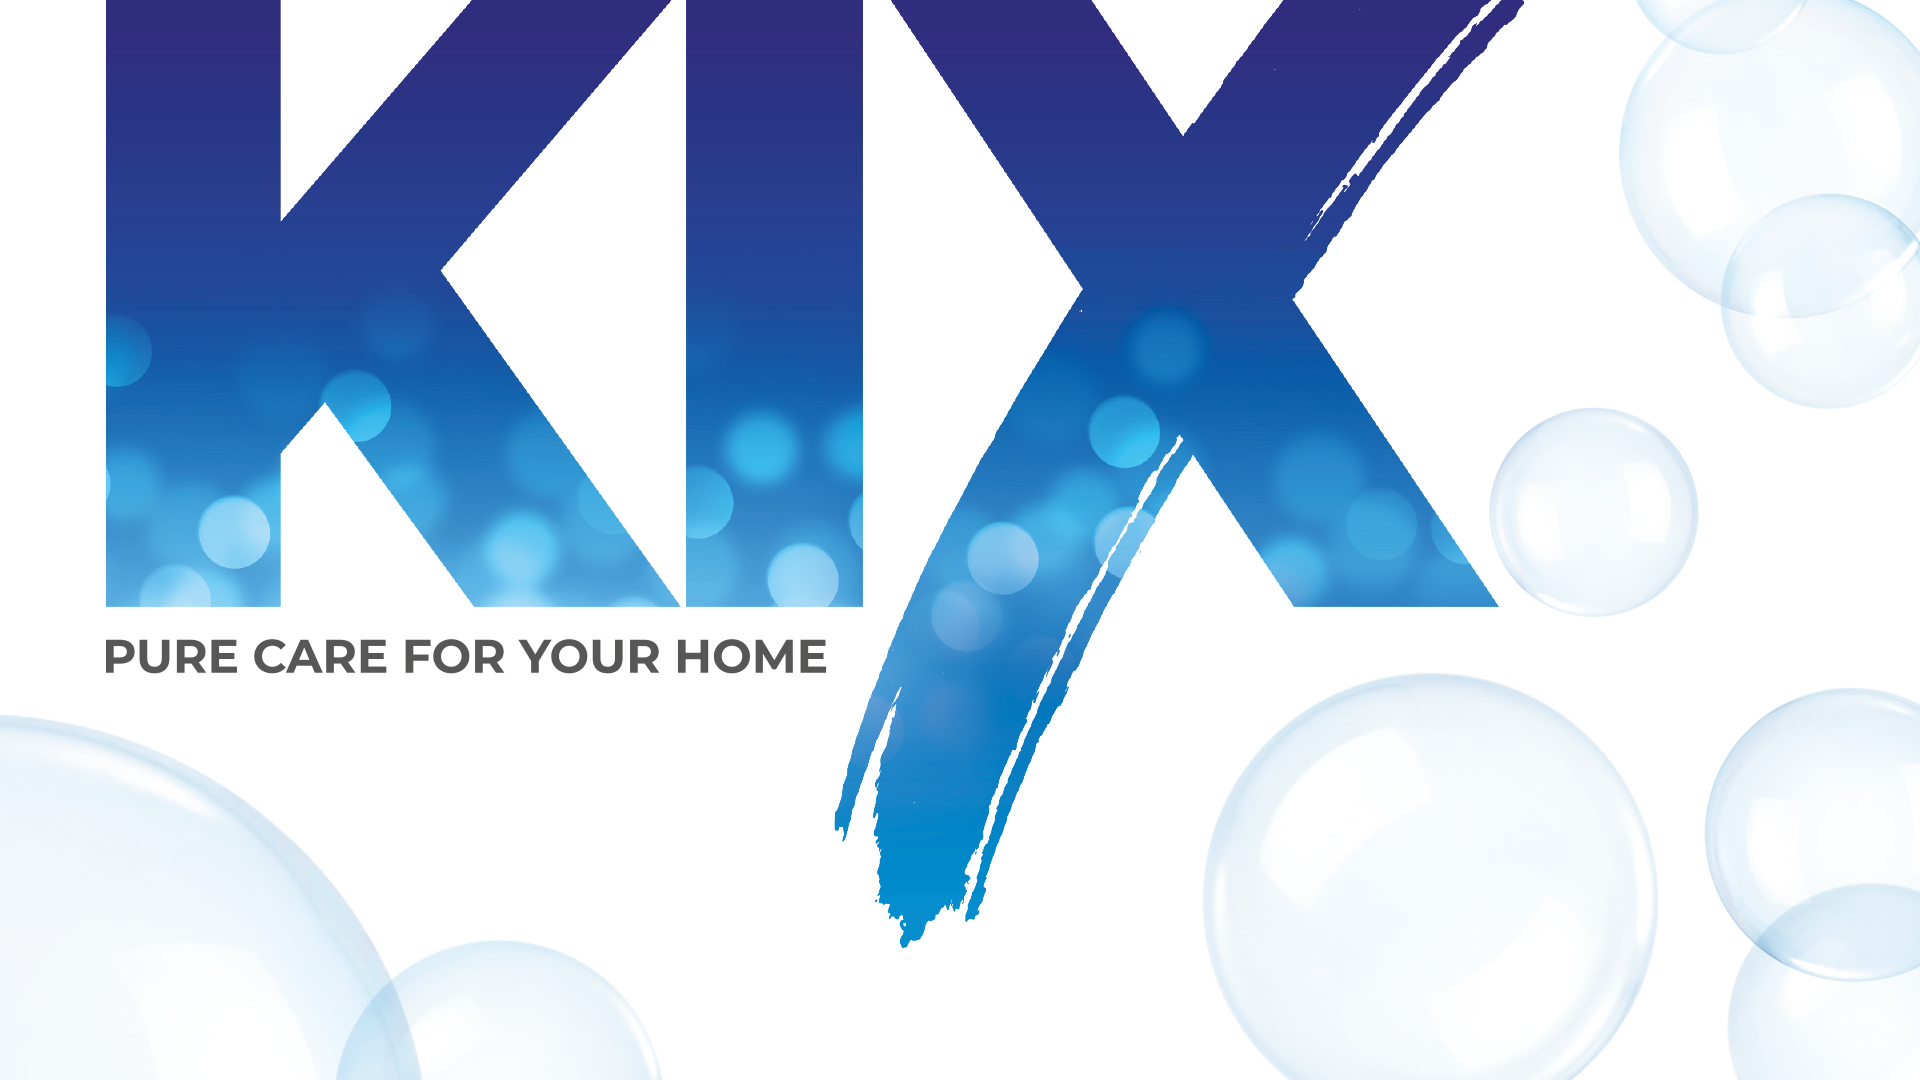 Разработка нейминга для бренда гигиены и бытовой химии Kix